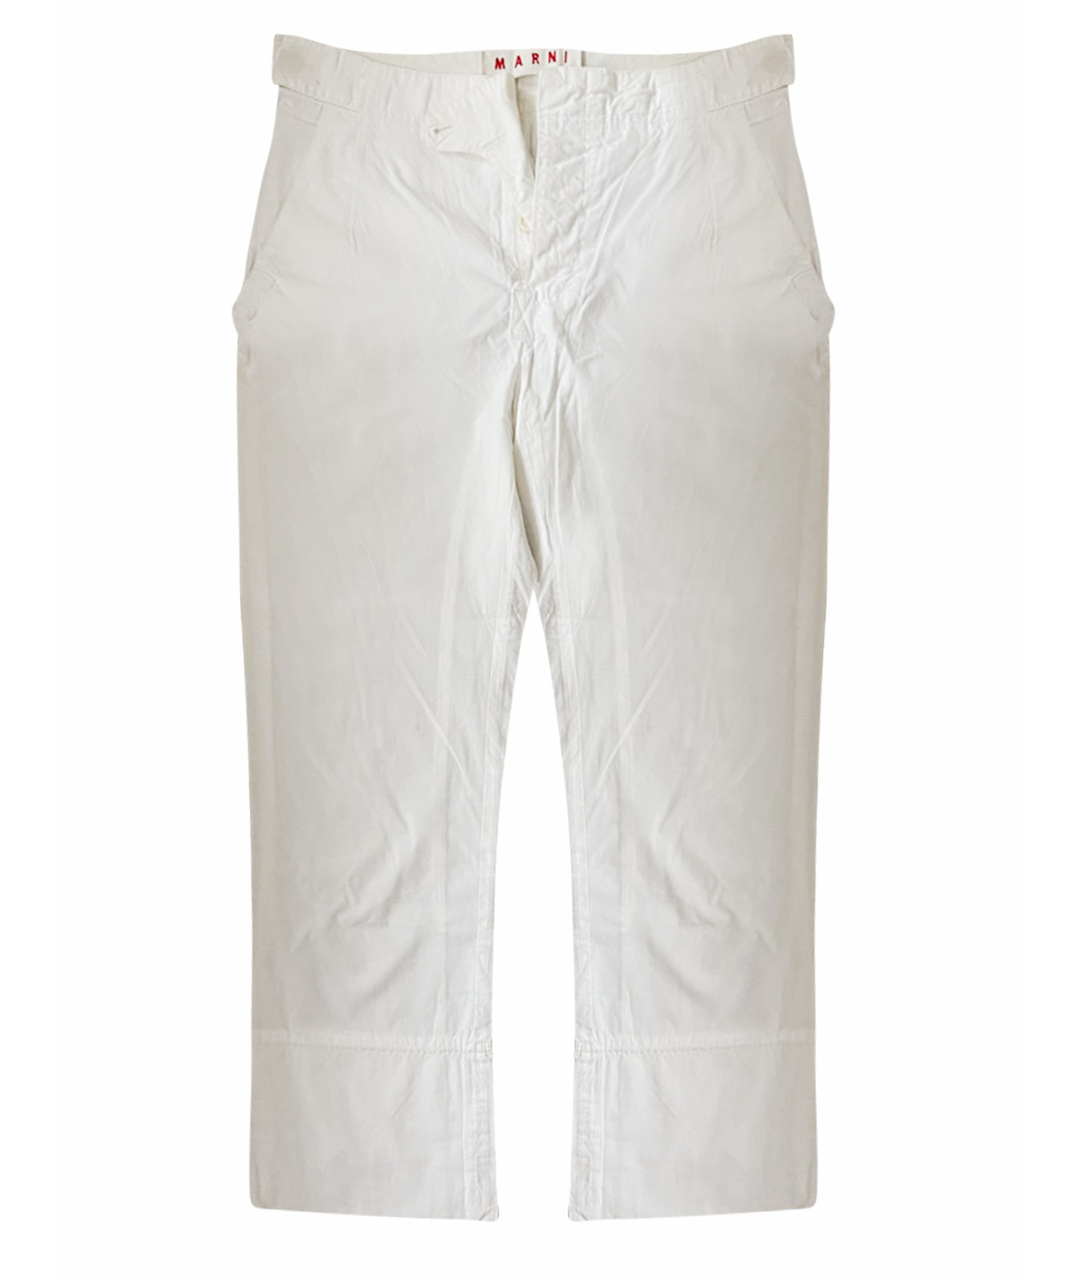 MARNI Белые хлопковые прямые брюки, фото 1